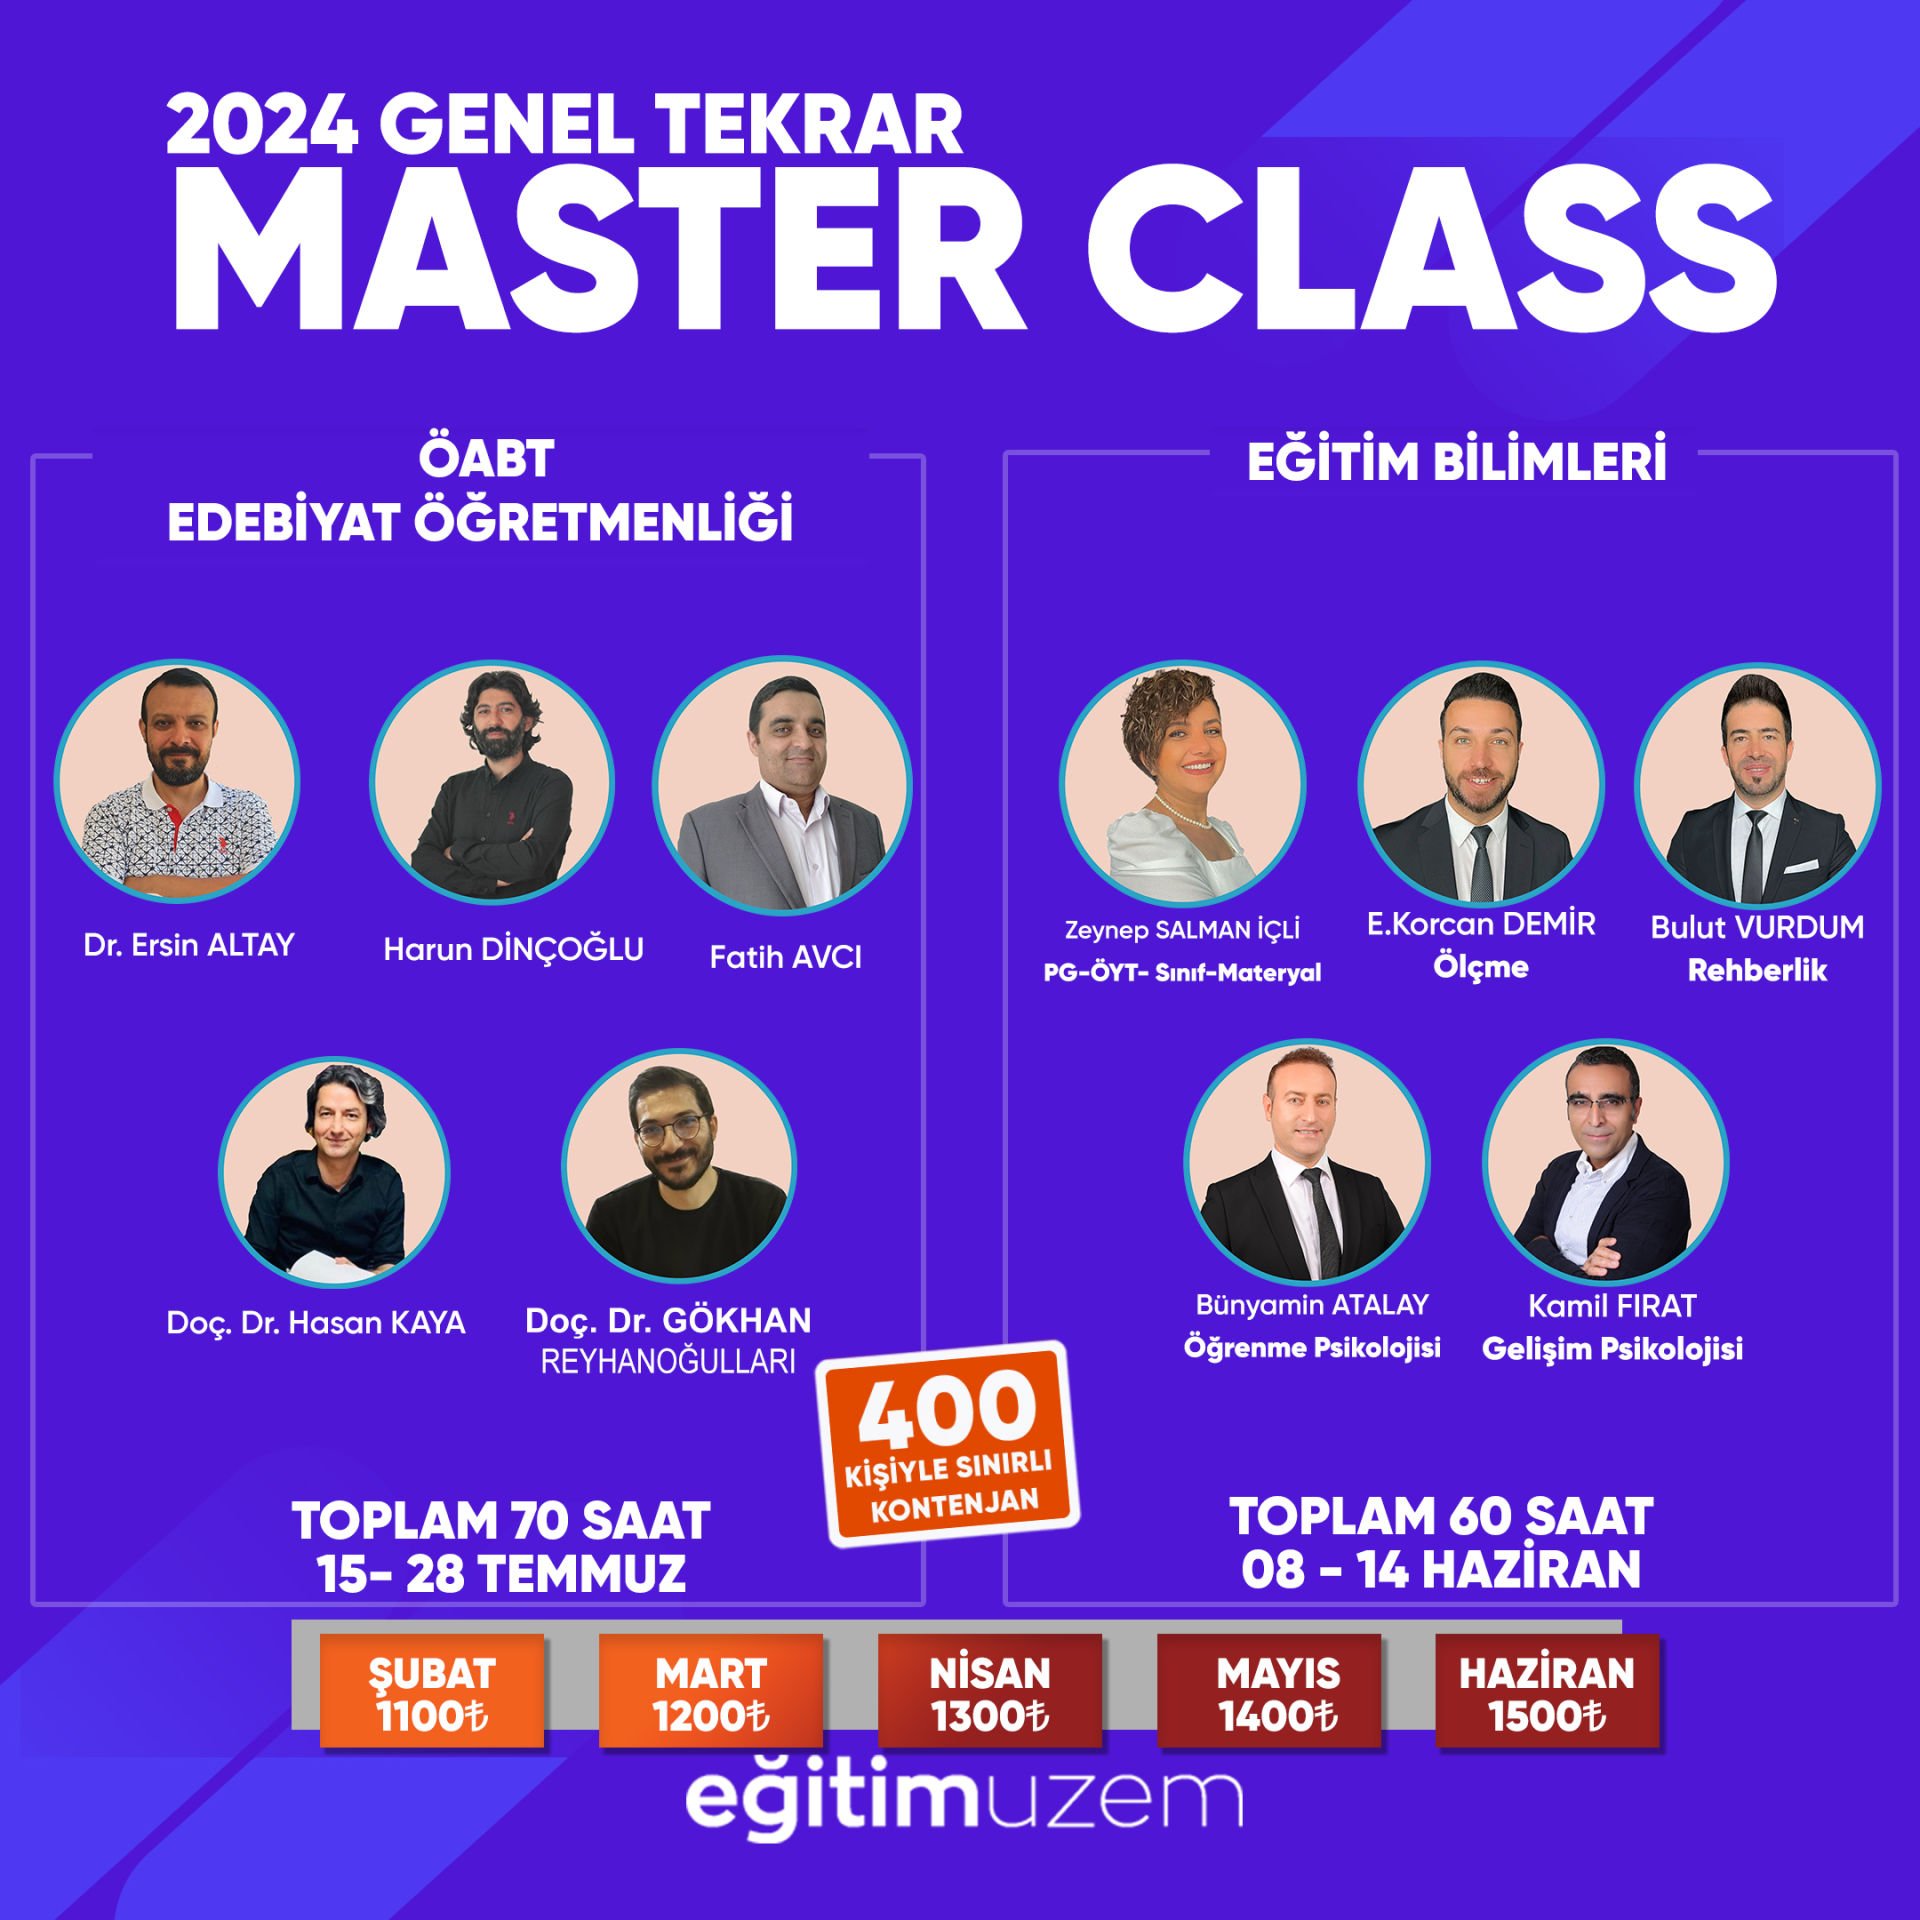 2024 KPSS Genel Tekrar Master Class ÖABT Türk Dili ve Edebiyatı Öğretmenliği + Eğitim Bilimleri